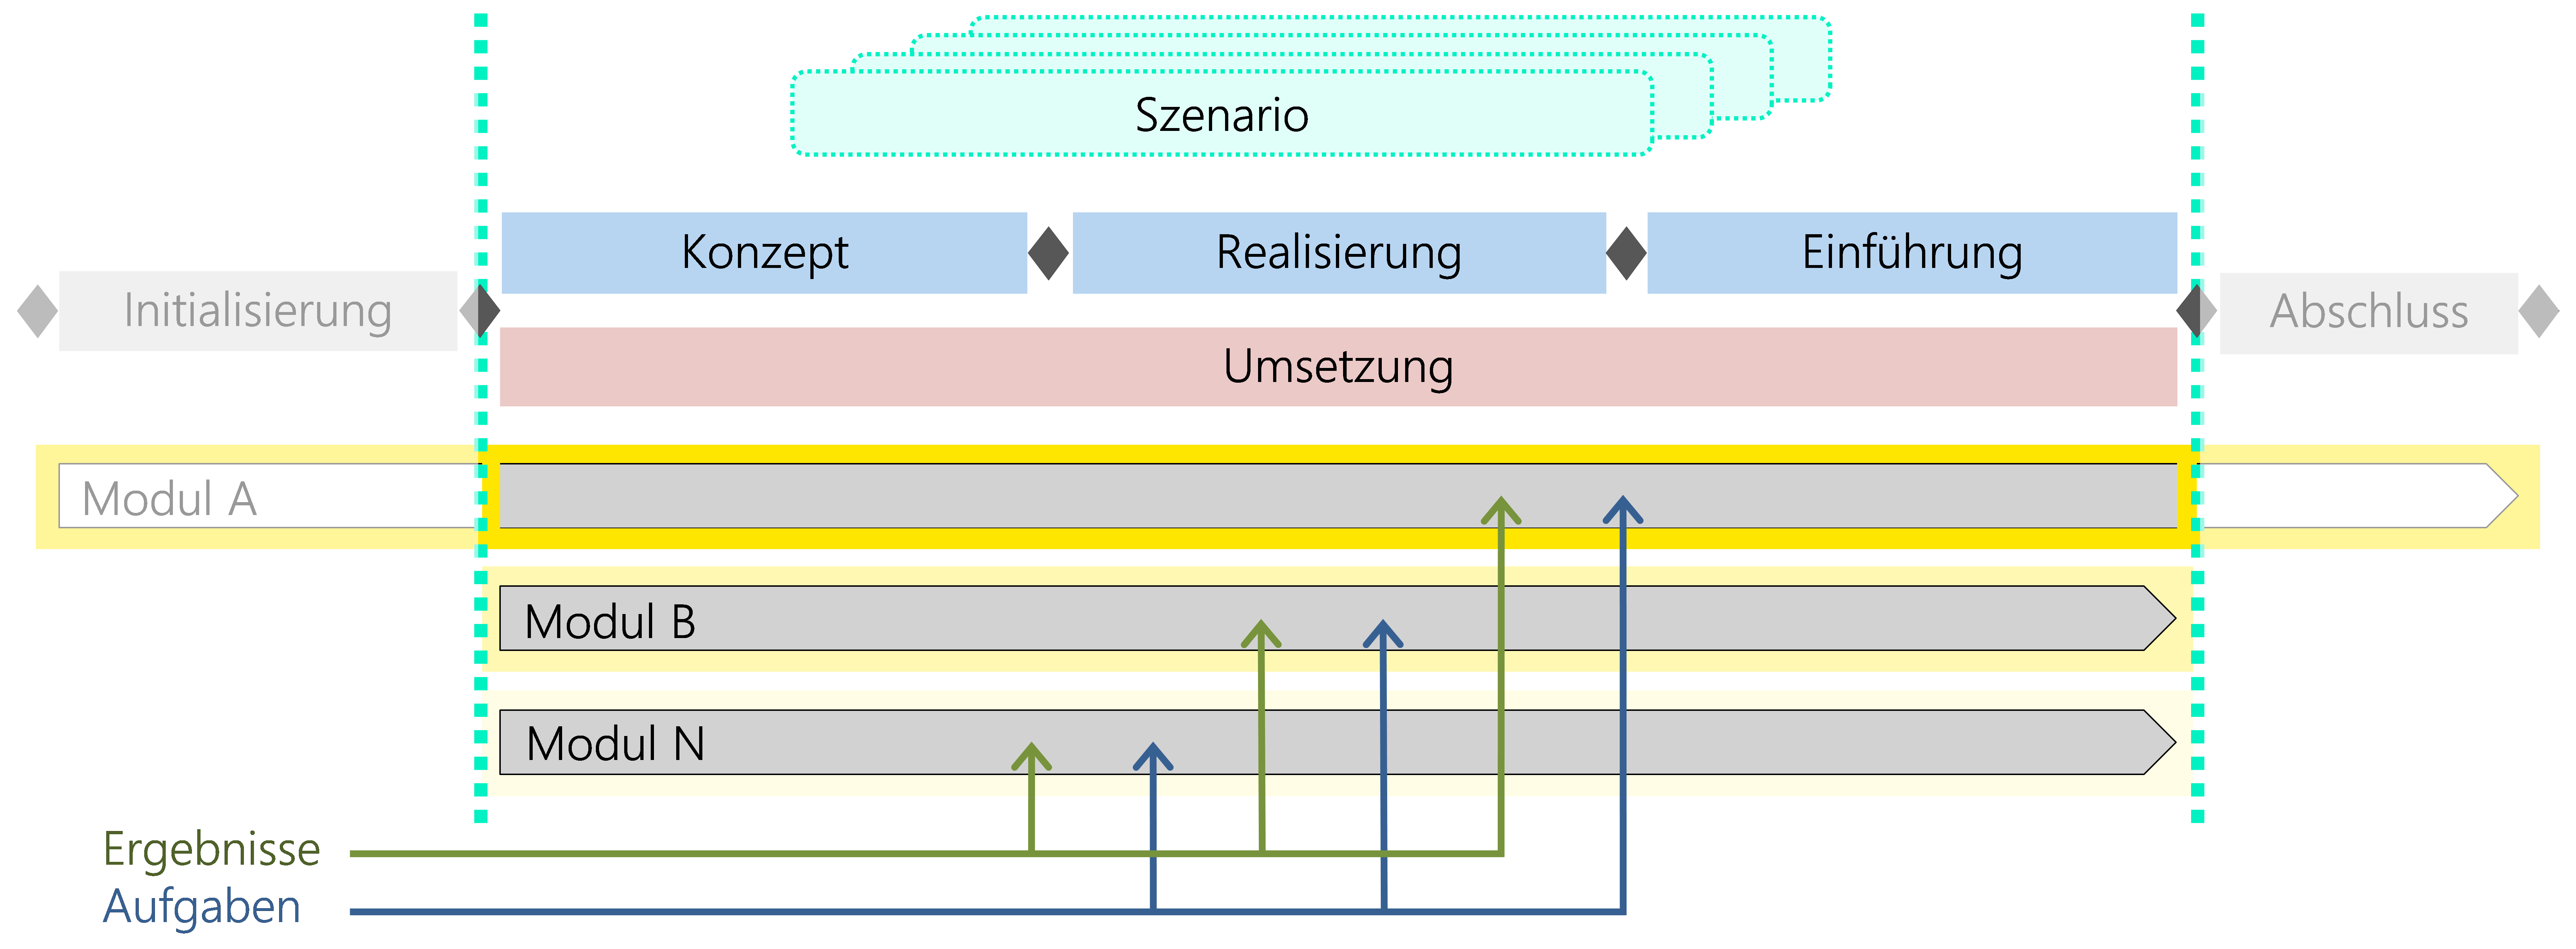 Abbildung 18: Mehrere Module mit Aufgaben und Ergebnissen als Basis für ein Szenario